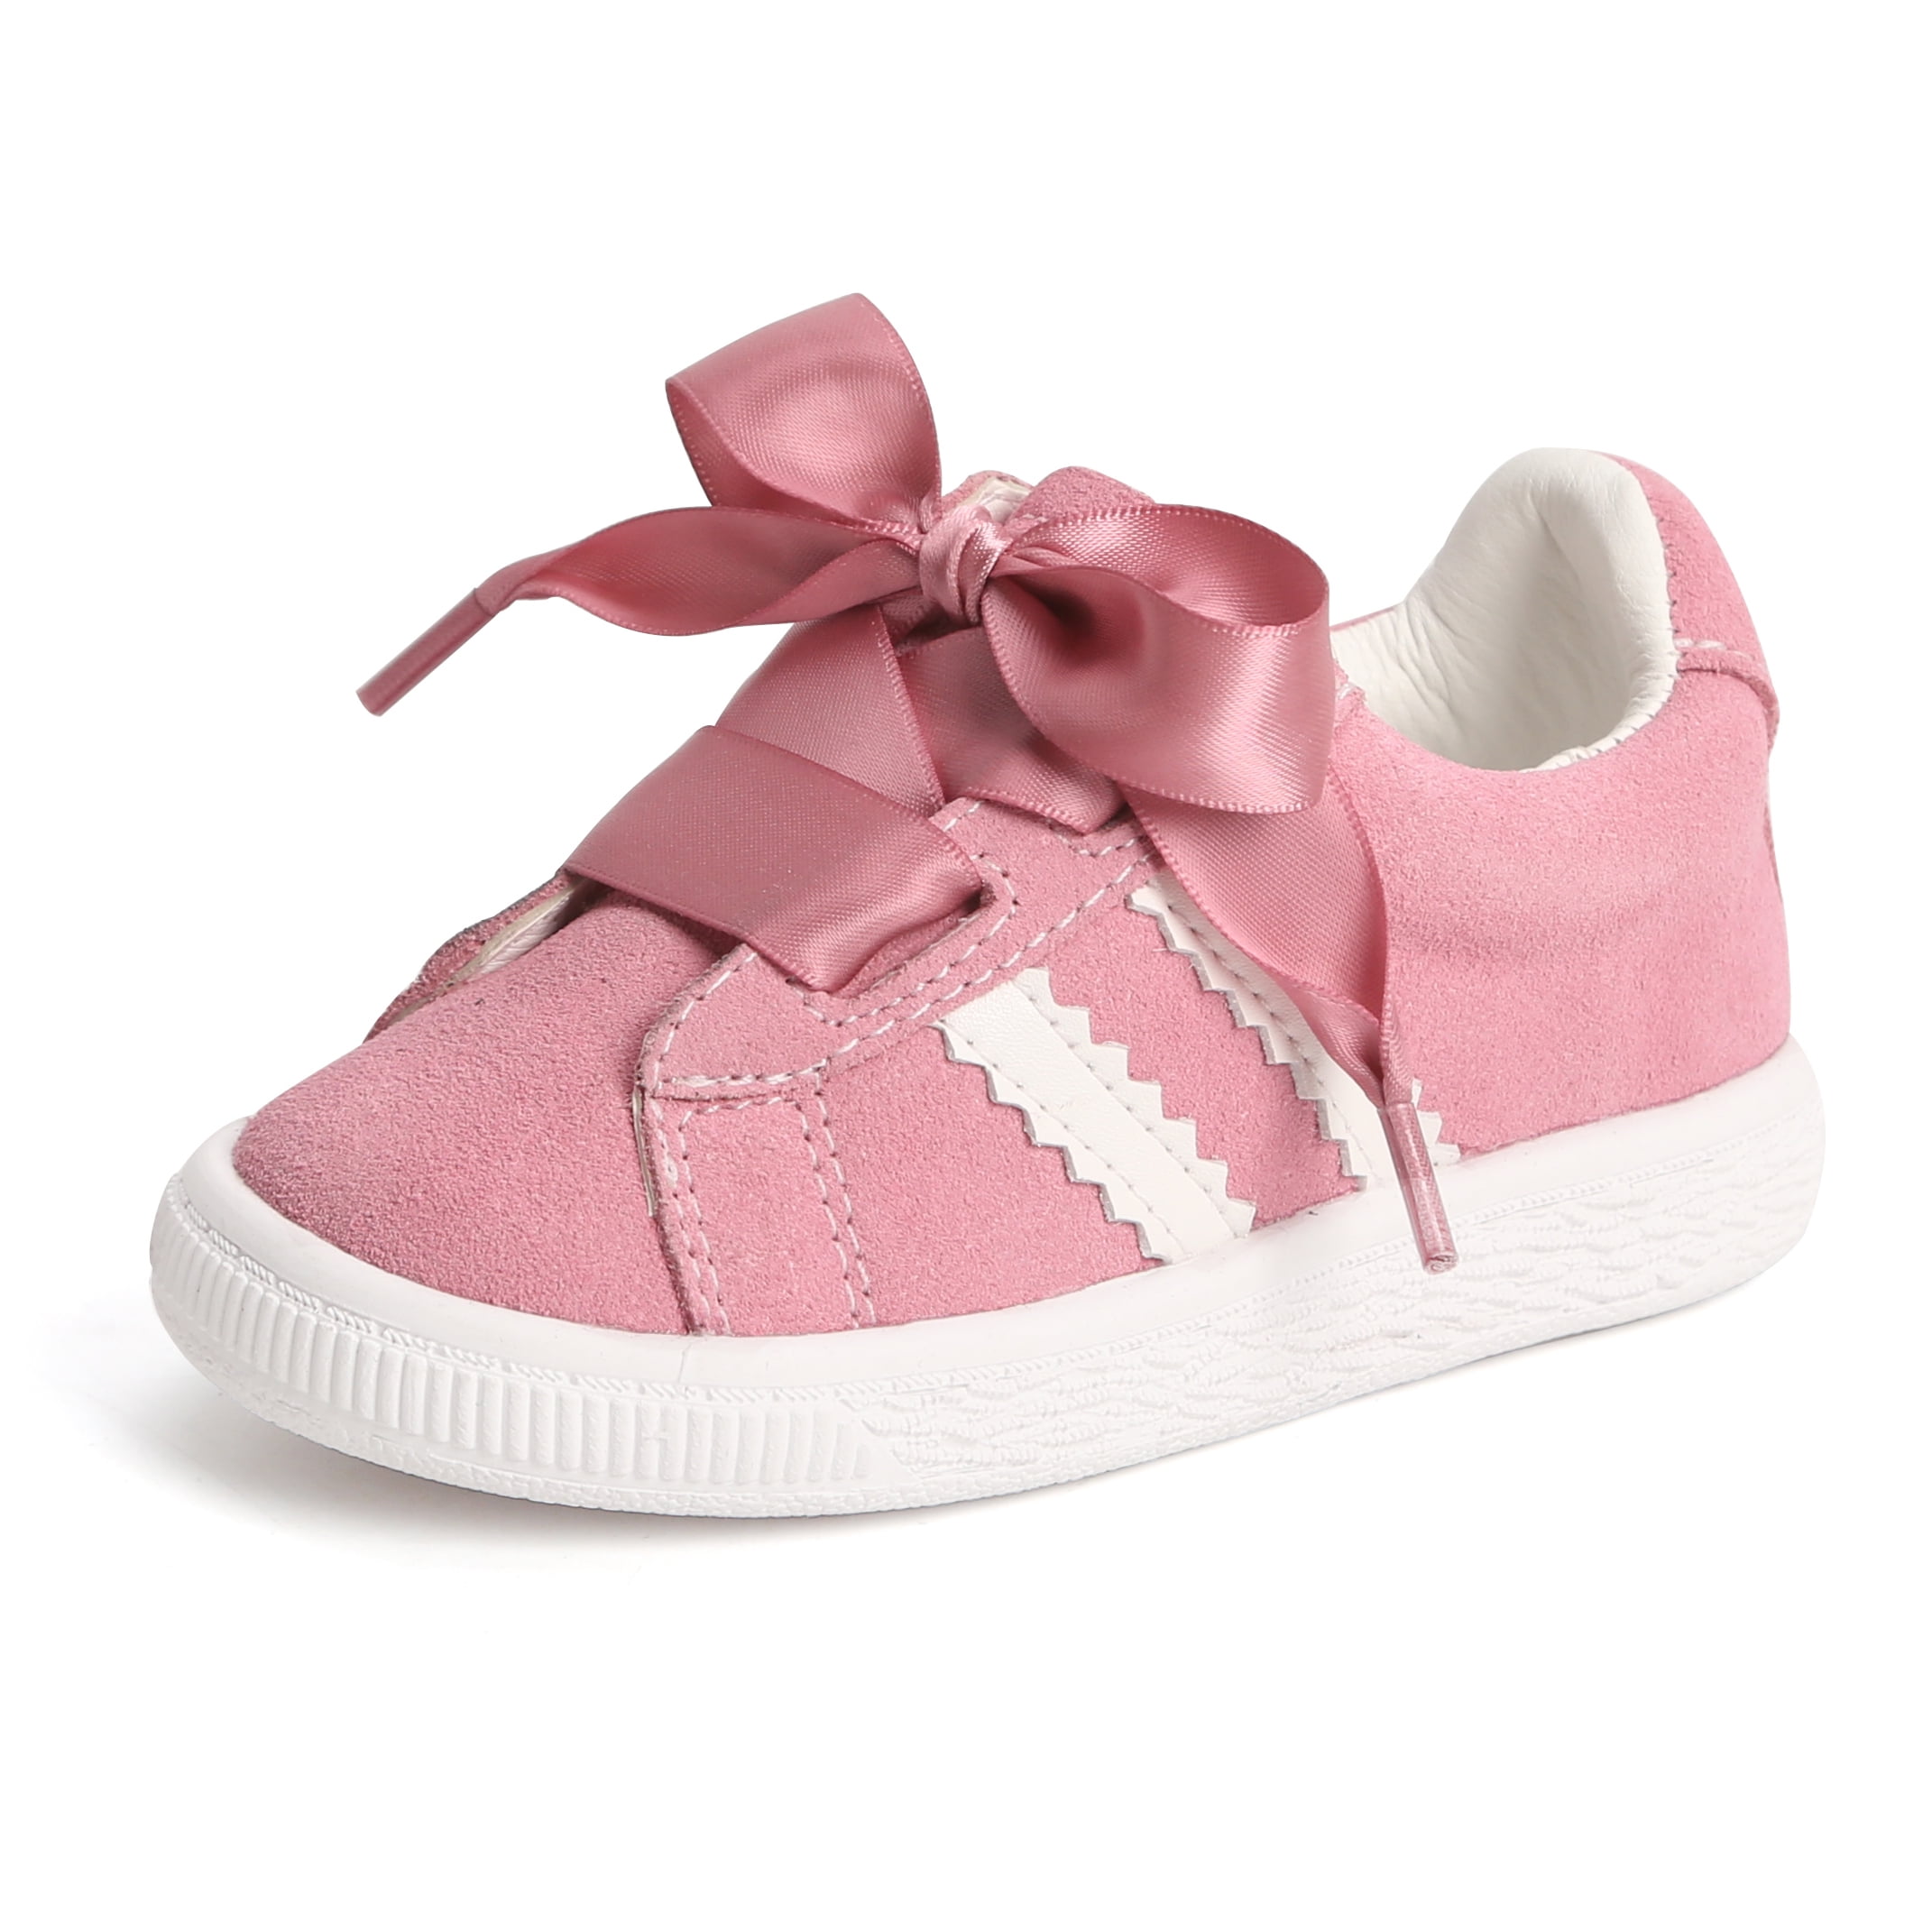 Toddler/Little Girls Running Shoes Fashion Kids Lightweight Princess Children's Casual Lovely Girls Shoes - Walmart.com